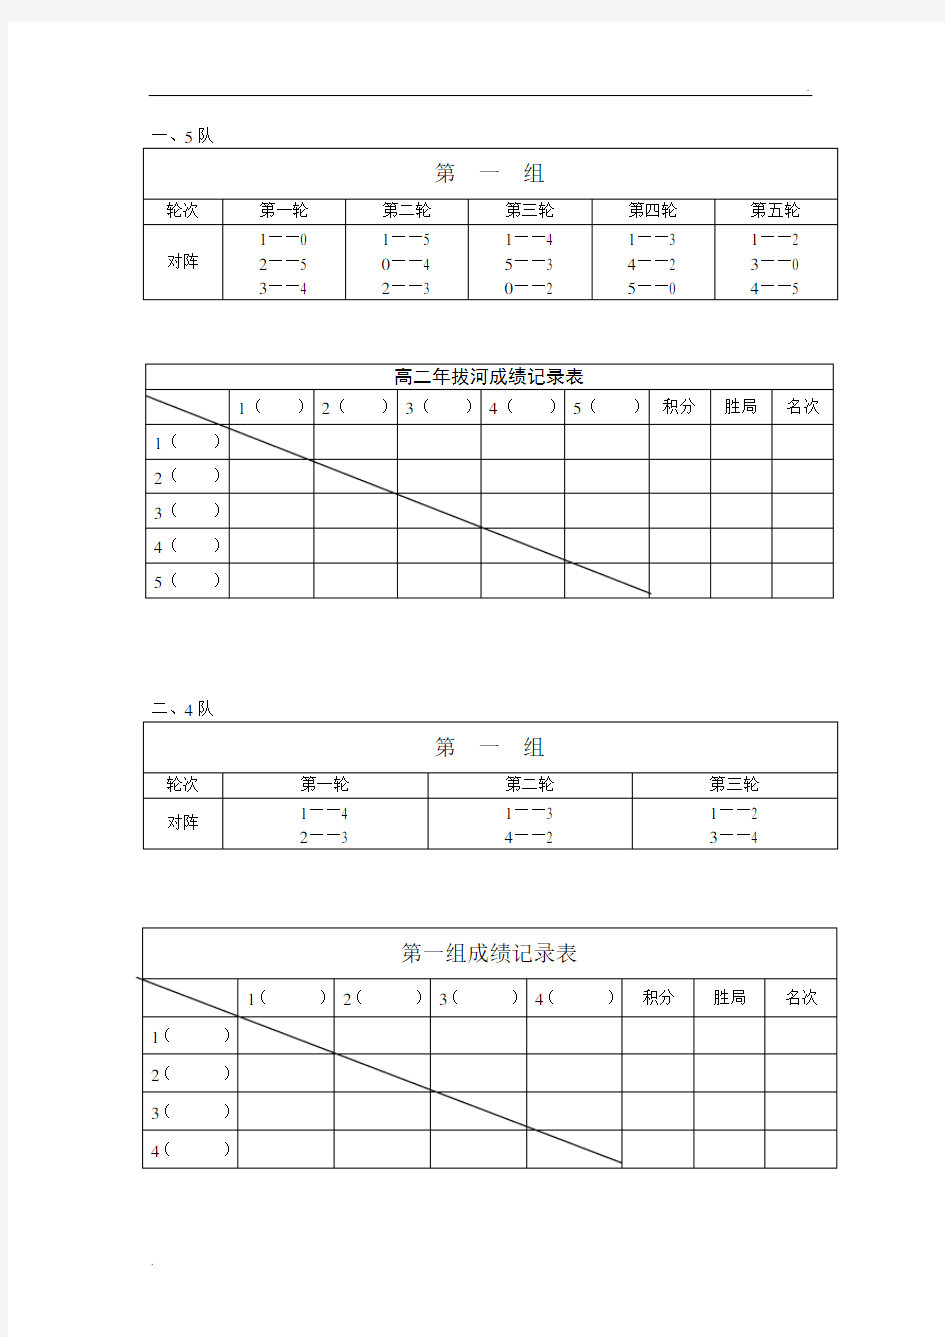 拔河比赛单循环对阵表 (2)